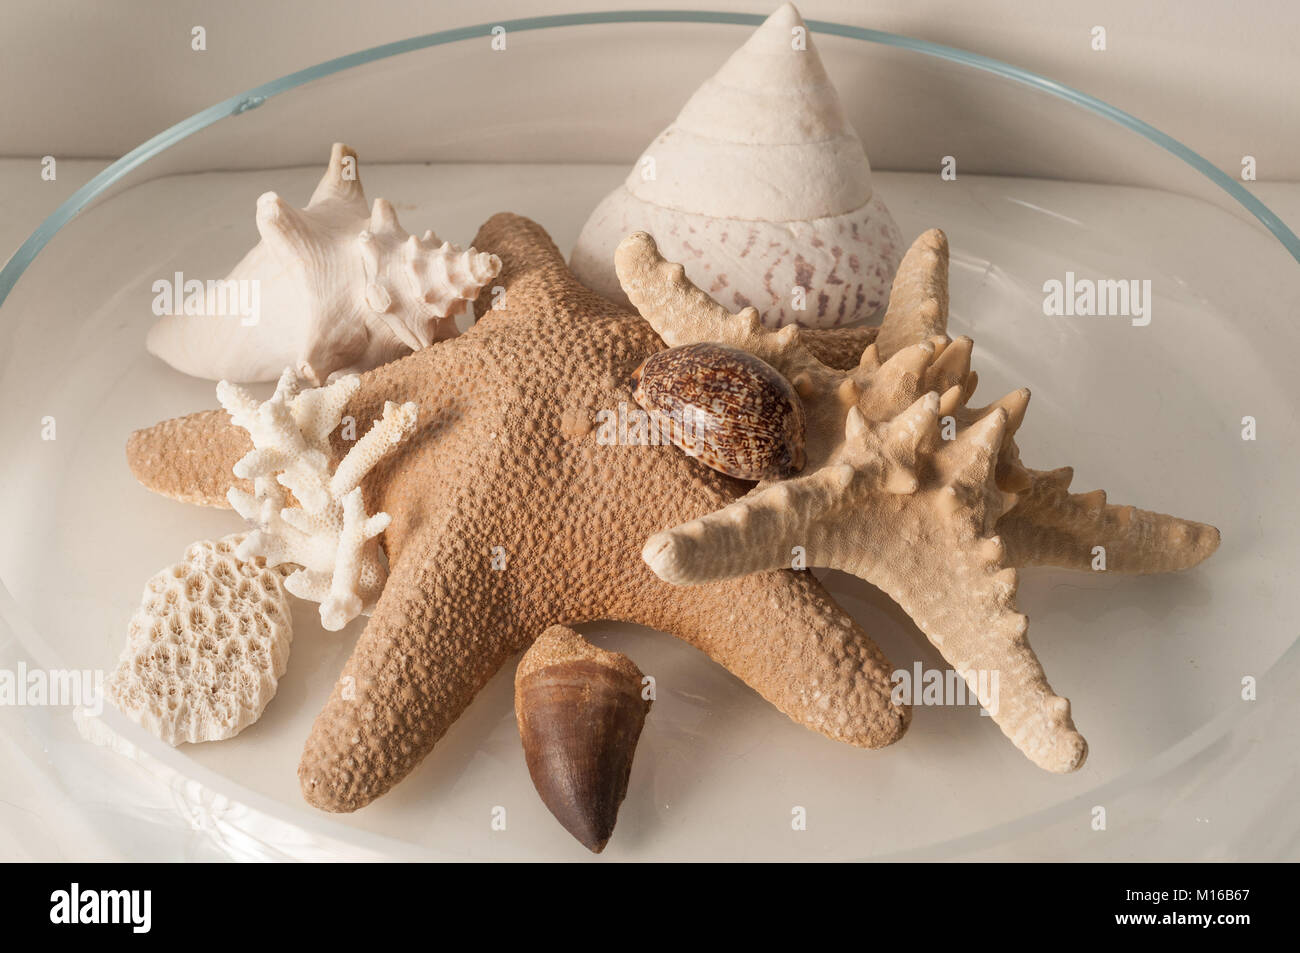 L'intérieur de la création d'intérieurs réalisés avec des étoiles de mer, coraux et coquilles dans un récipient en verre Banque D'Images